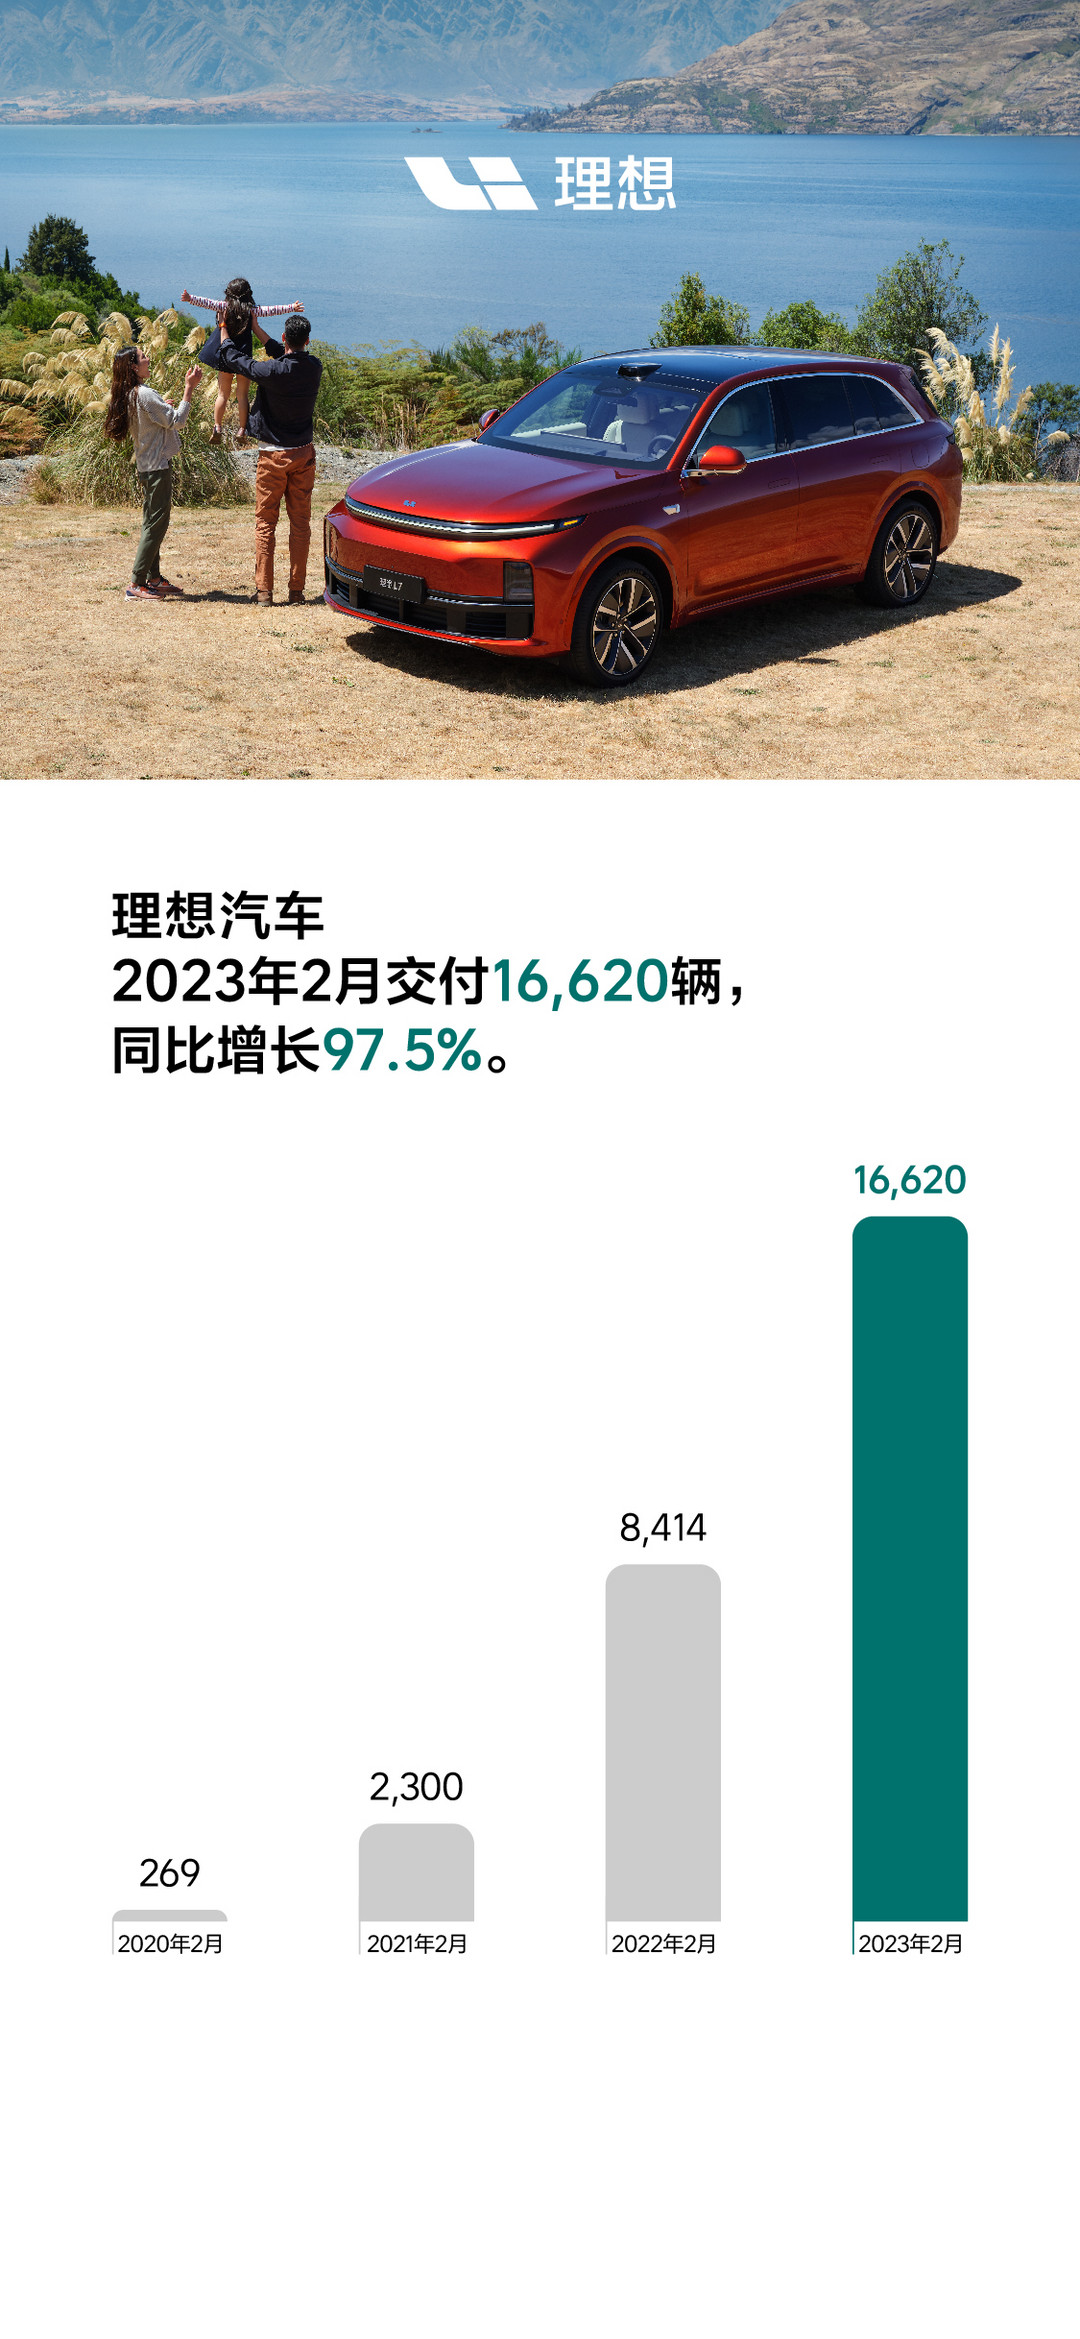 理想汽车2023年2月交付16,620辆 理想L7即将开启交付.jpg